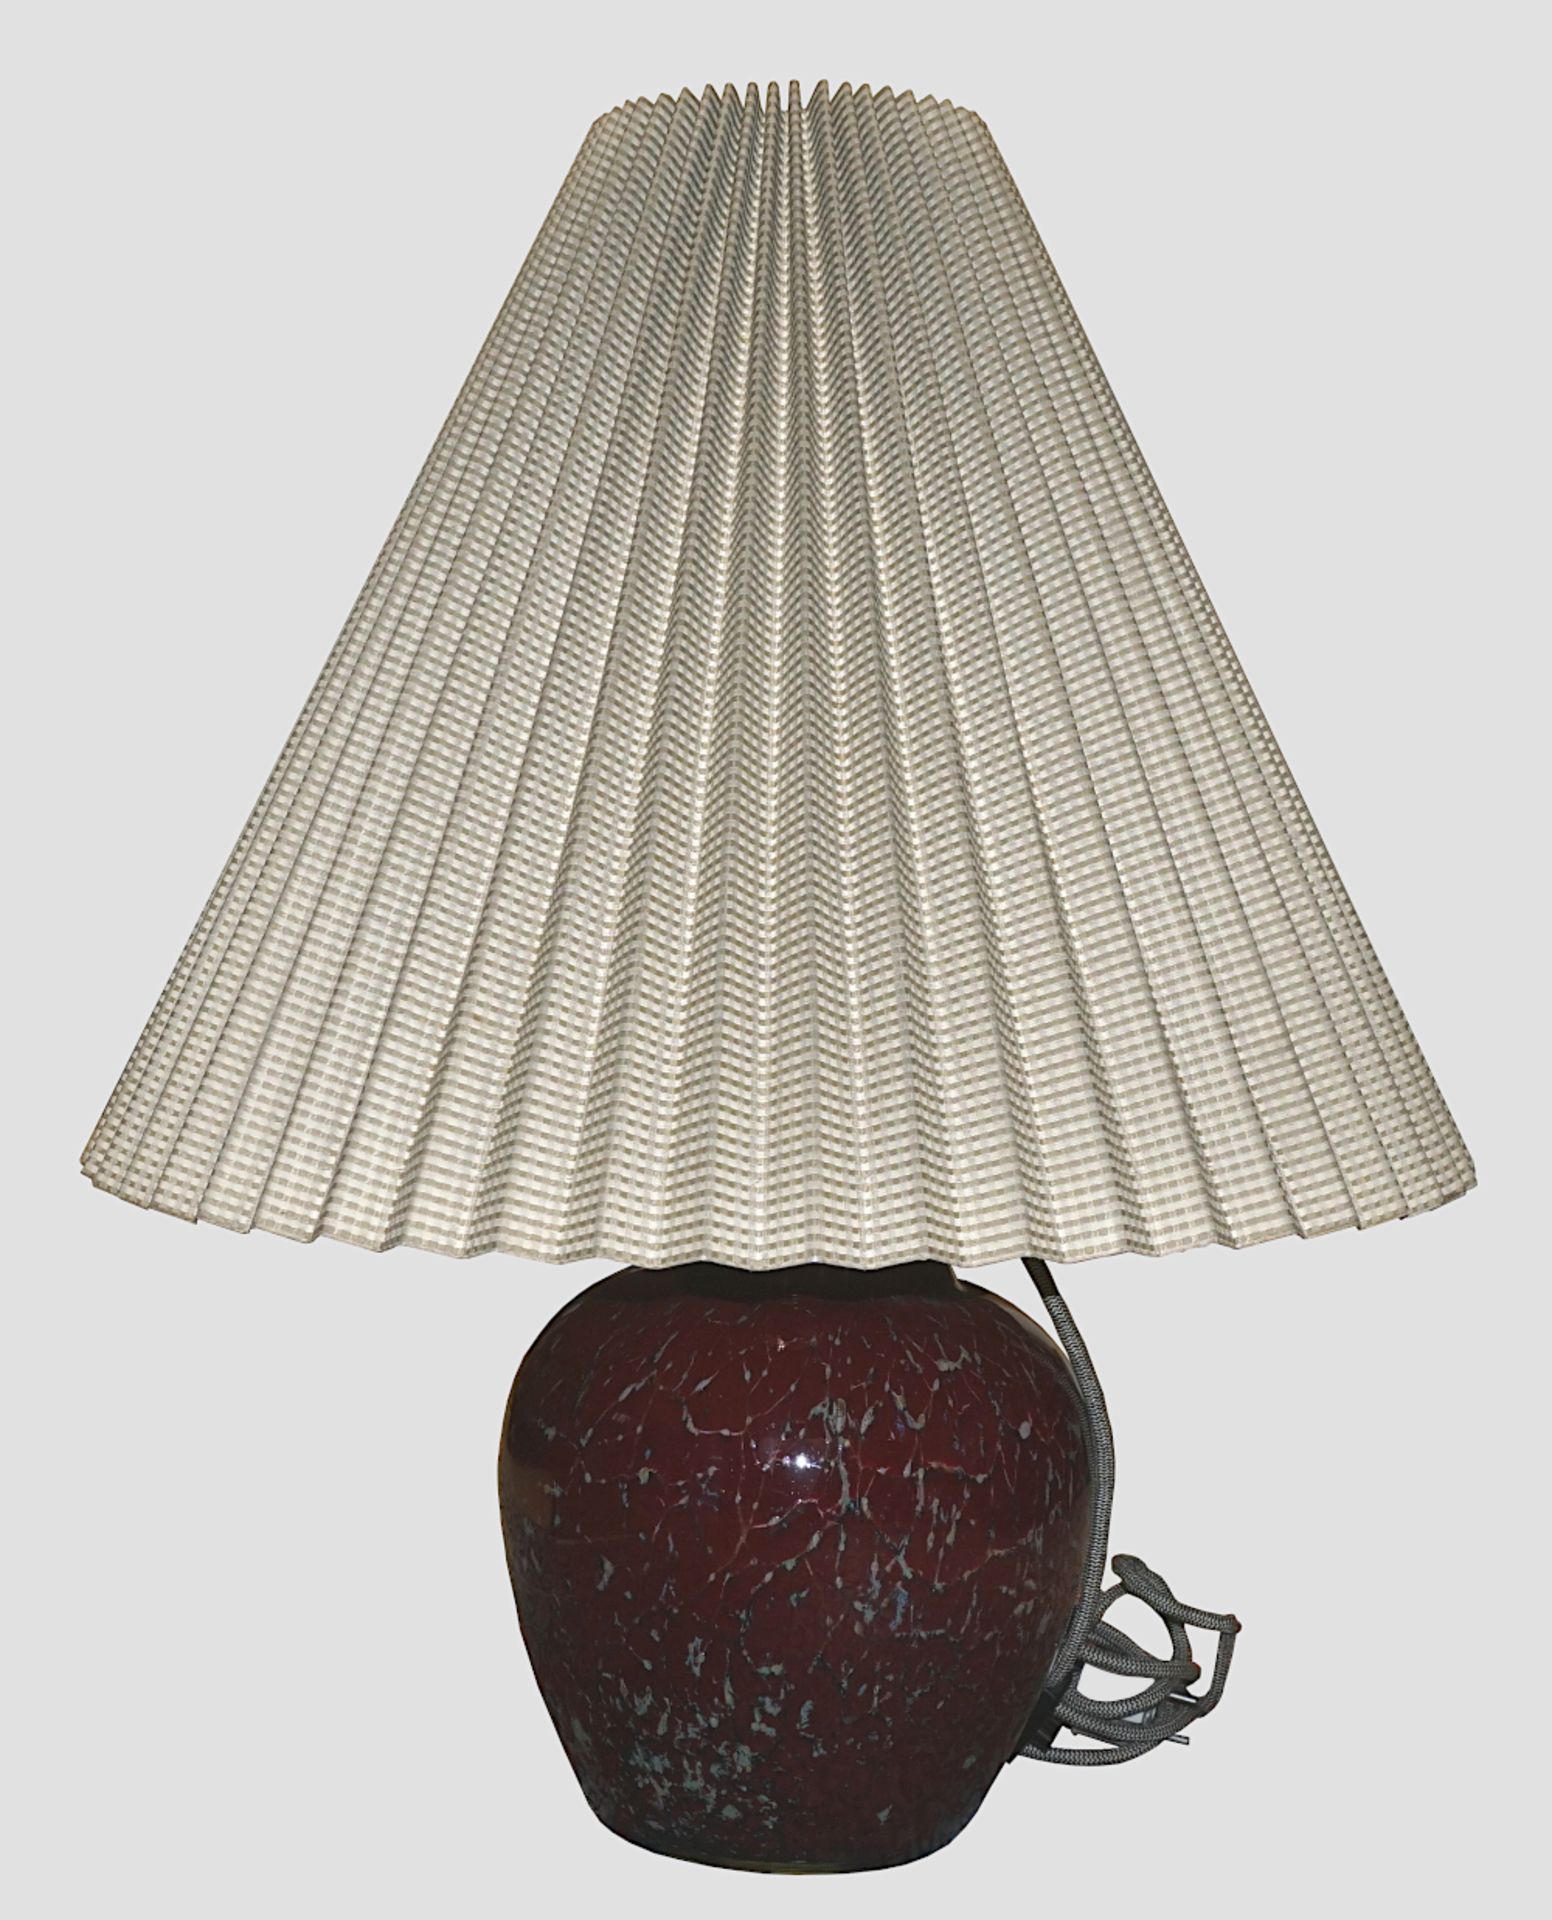 1 Tischlampe wohl 1930er Jahre WMF „Ikora“ wohl Design: Karl WIEDMANN